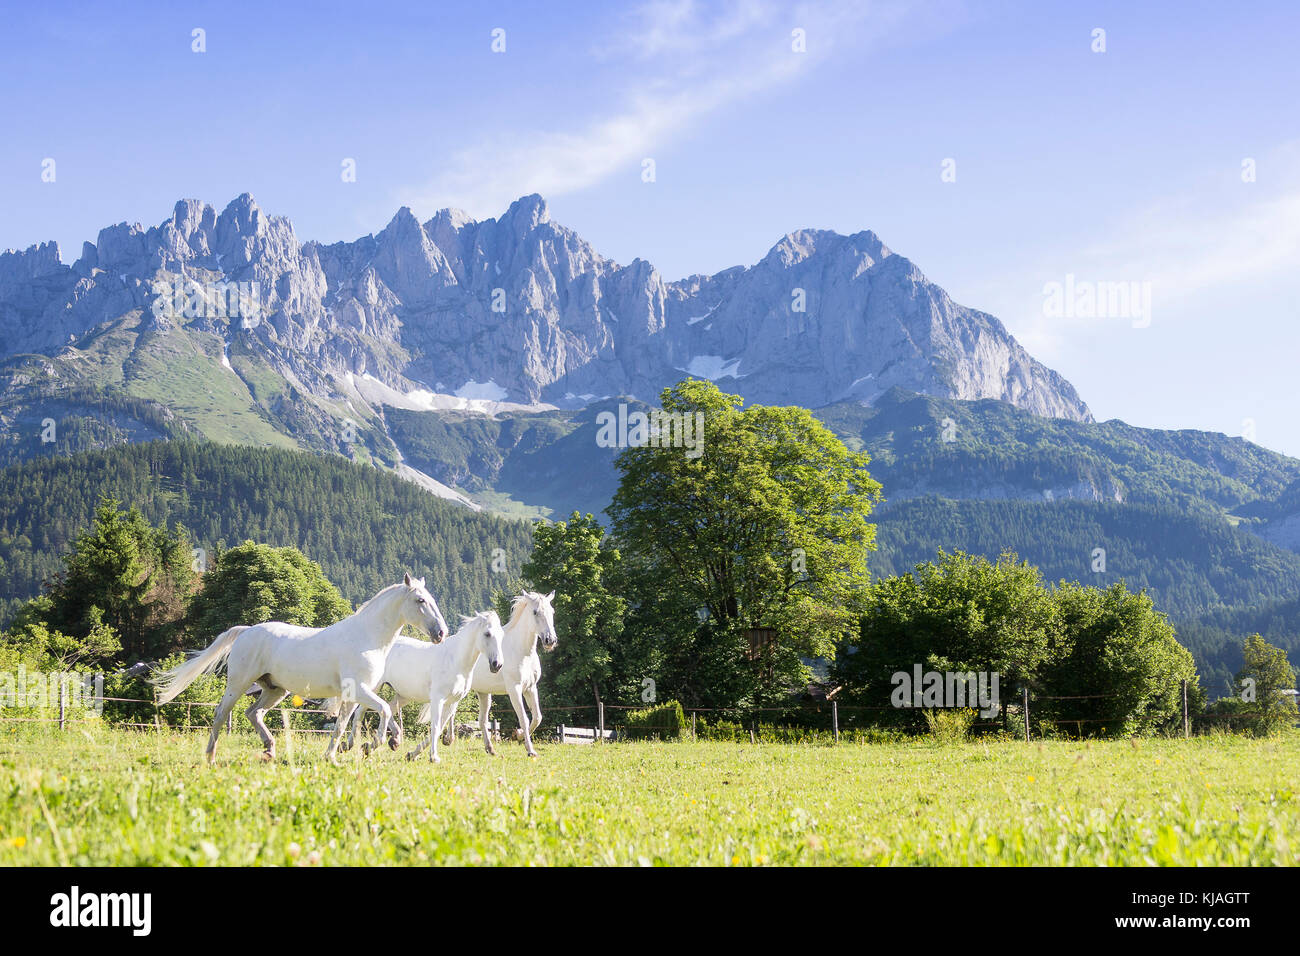 Cheval lipizzan. Trois juments adultes trottant sur un pâturage avec le Kaiser montagnes en arrière-plan. L'Autriche Banque D'Images